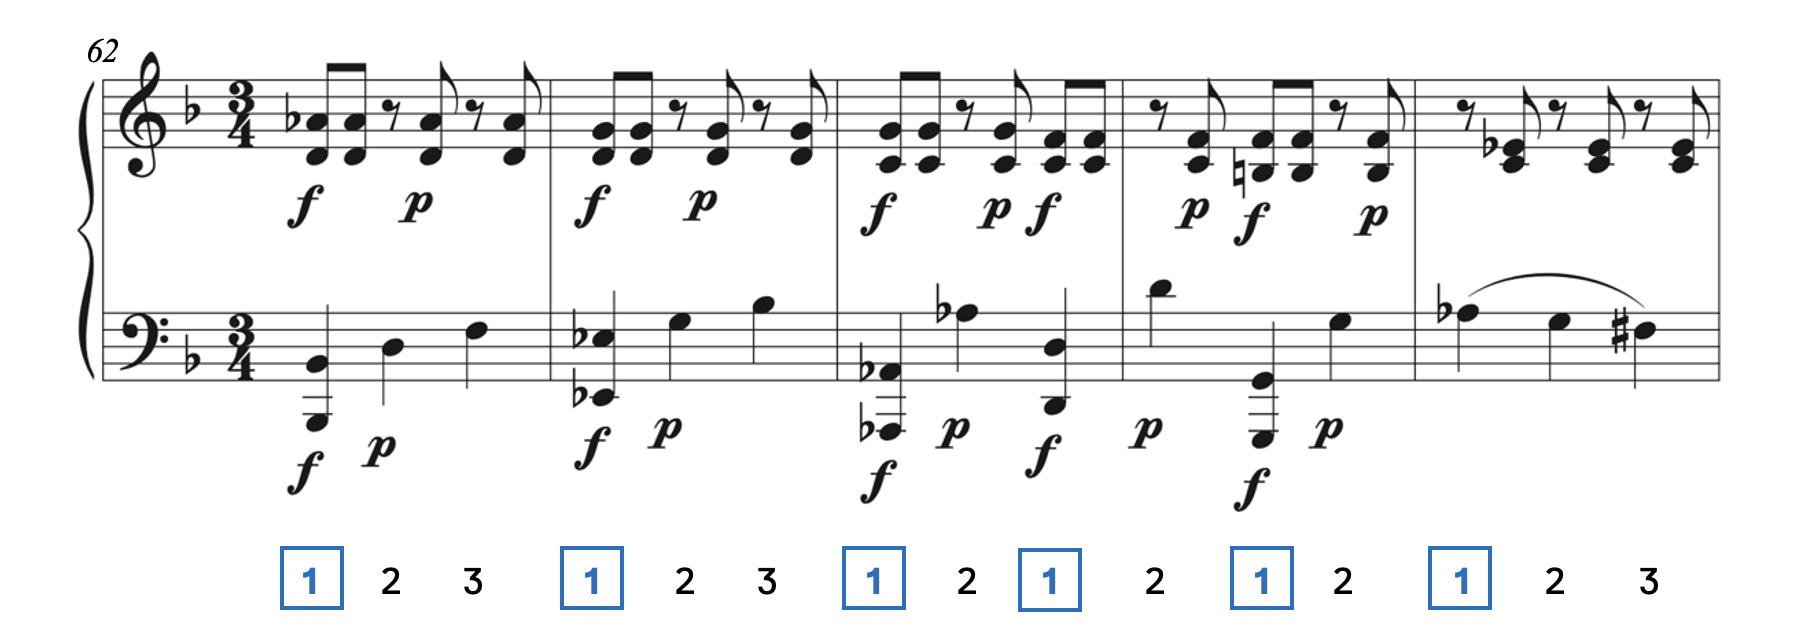 Hemiola in Mozart, Piano Sonata No. 12 in F Major. Accents move from three beats per measure to two beats per measure.